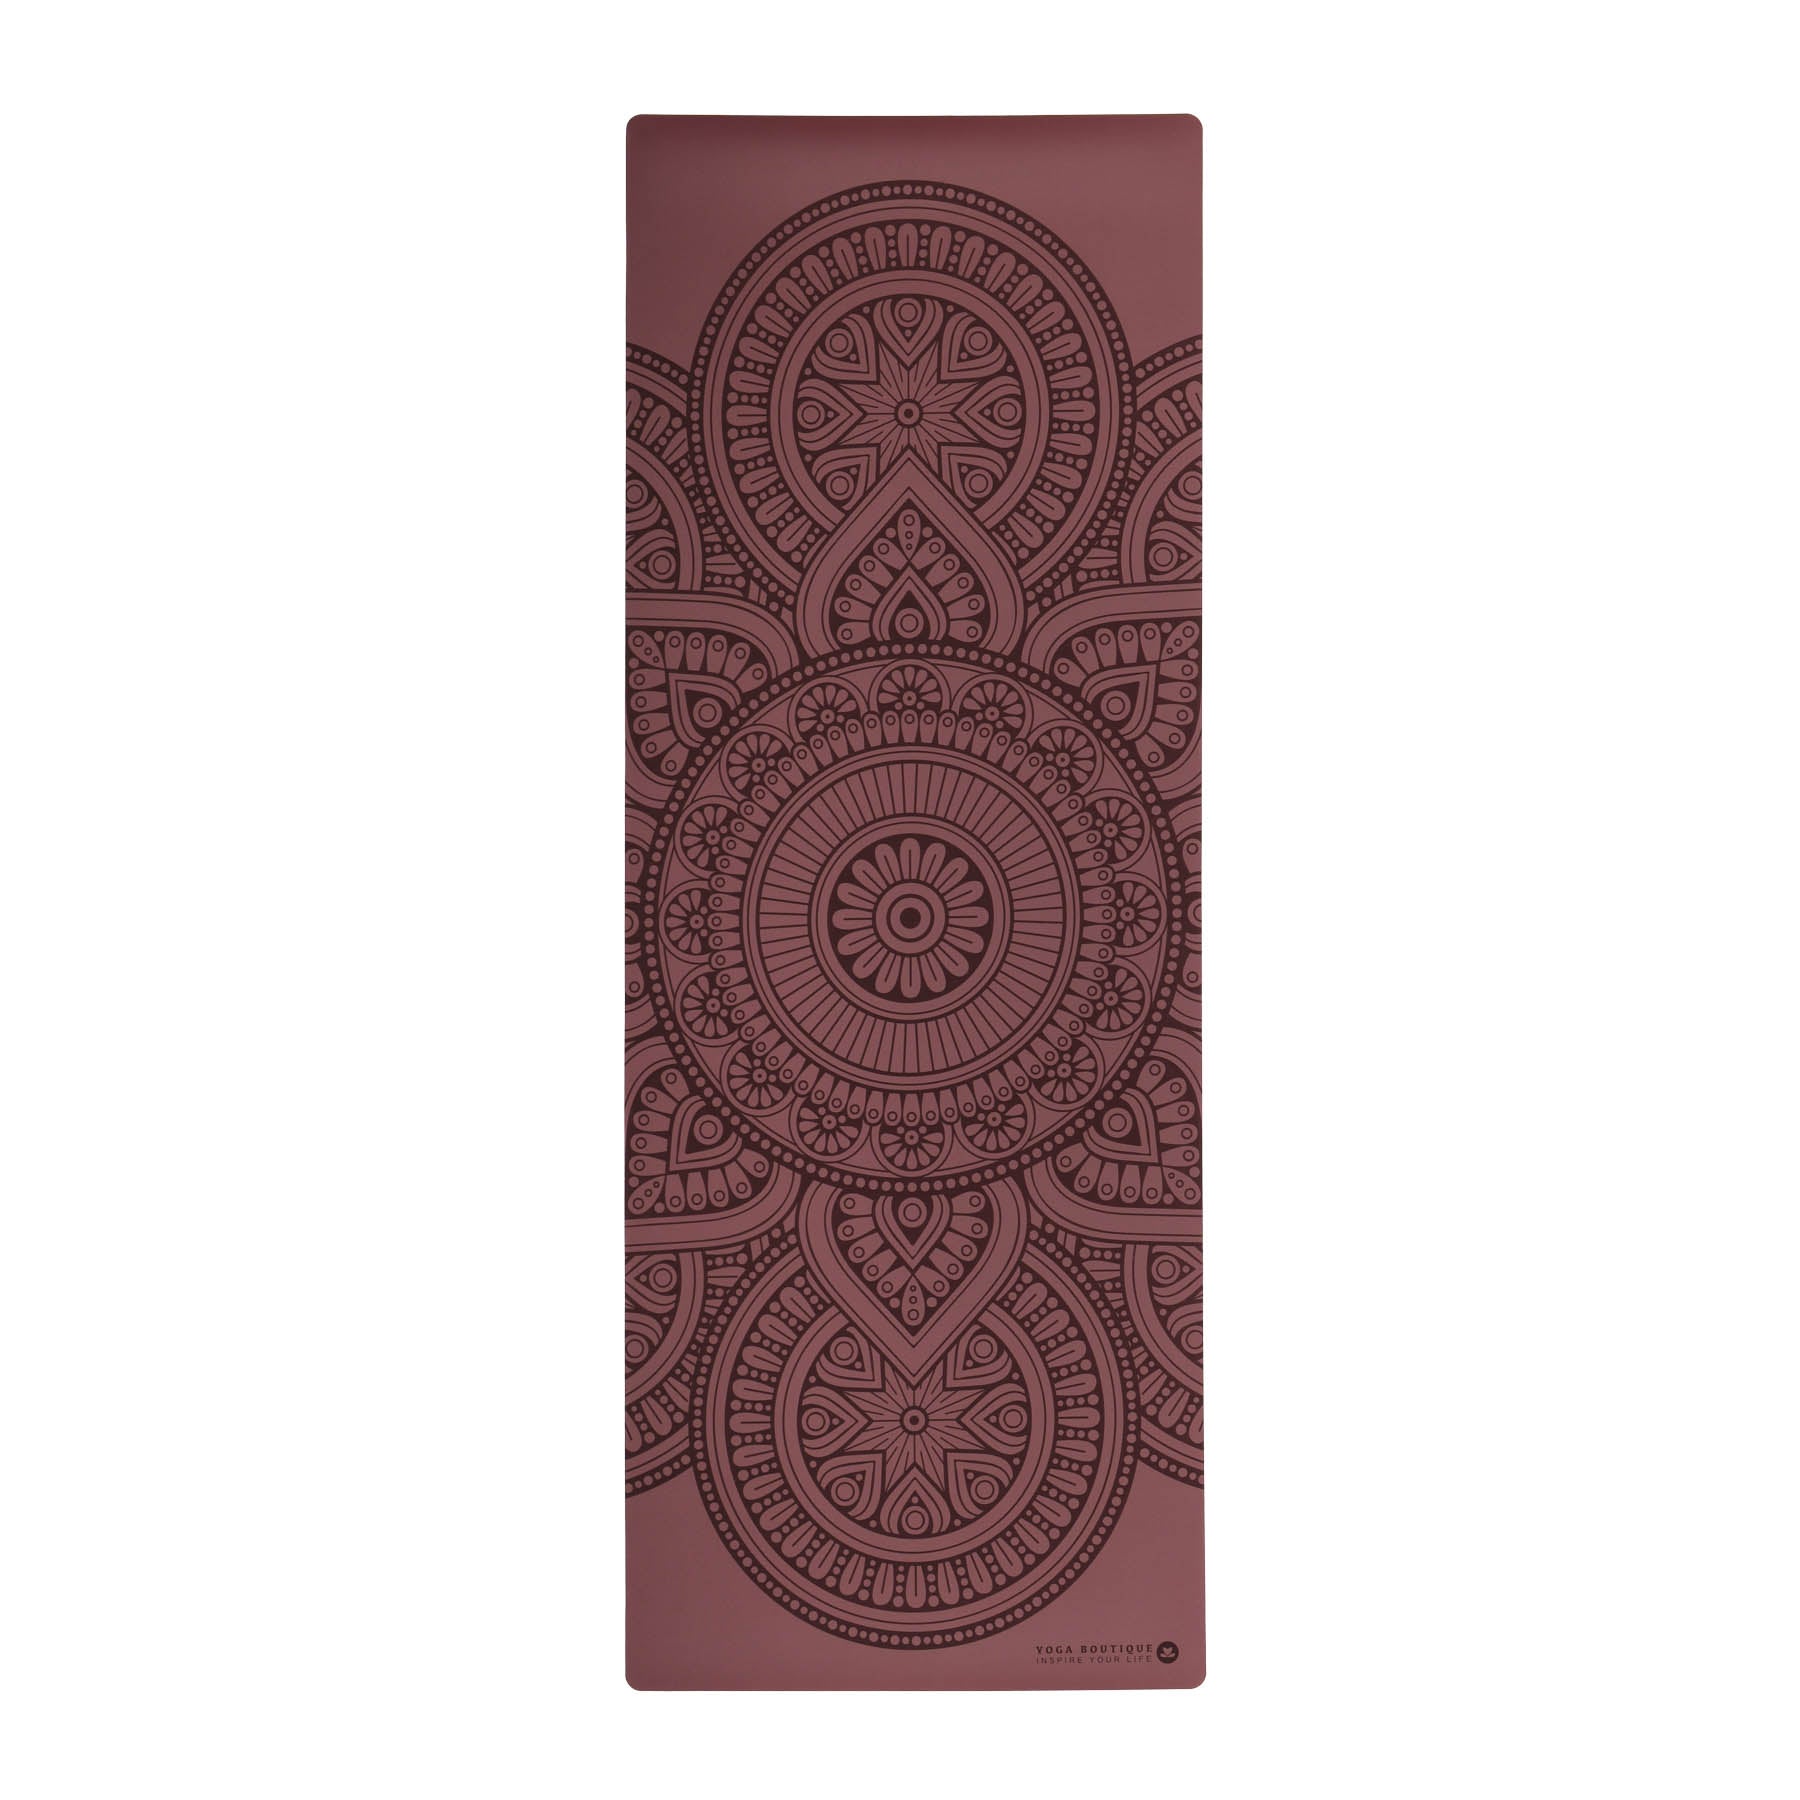 Tapis de yoga SuperGrip 2.0 Mandala tapis de yoga très antidérapant berry en caoutchouc naturel avec bonne tenue